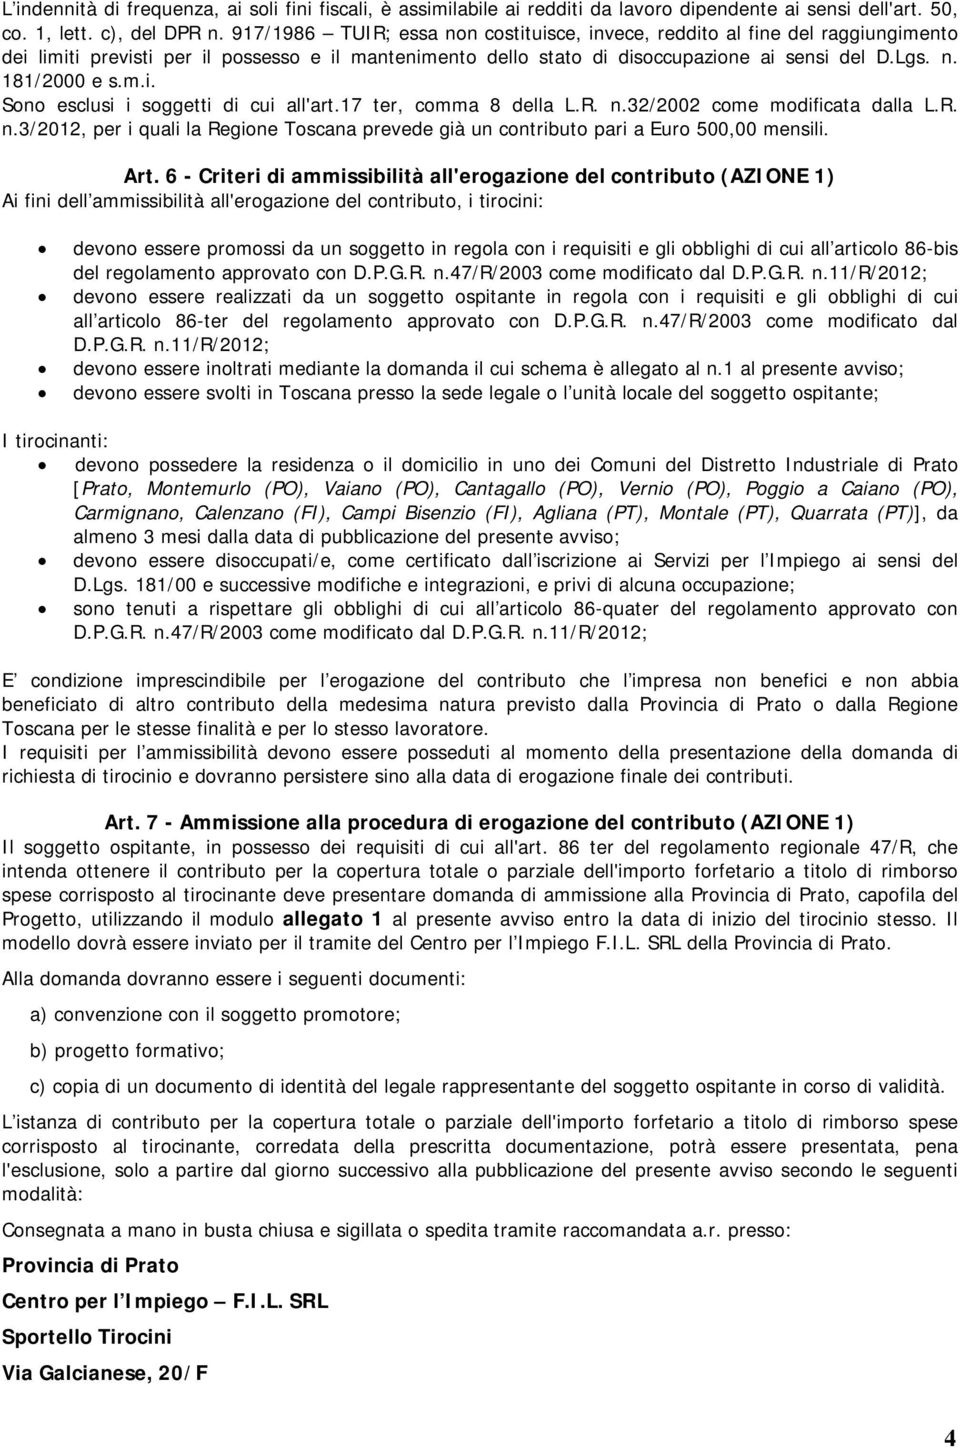 m.i. Sono esclusi i soggetti di cui all'art.17 ter, comma 8 della L.R. n.32/2002 come modificata dalla L.R. n.3/2012, per i quali la Regione Toscana prevede già un contributo pari a Euro 500,00 mensili.